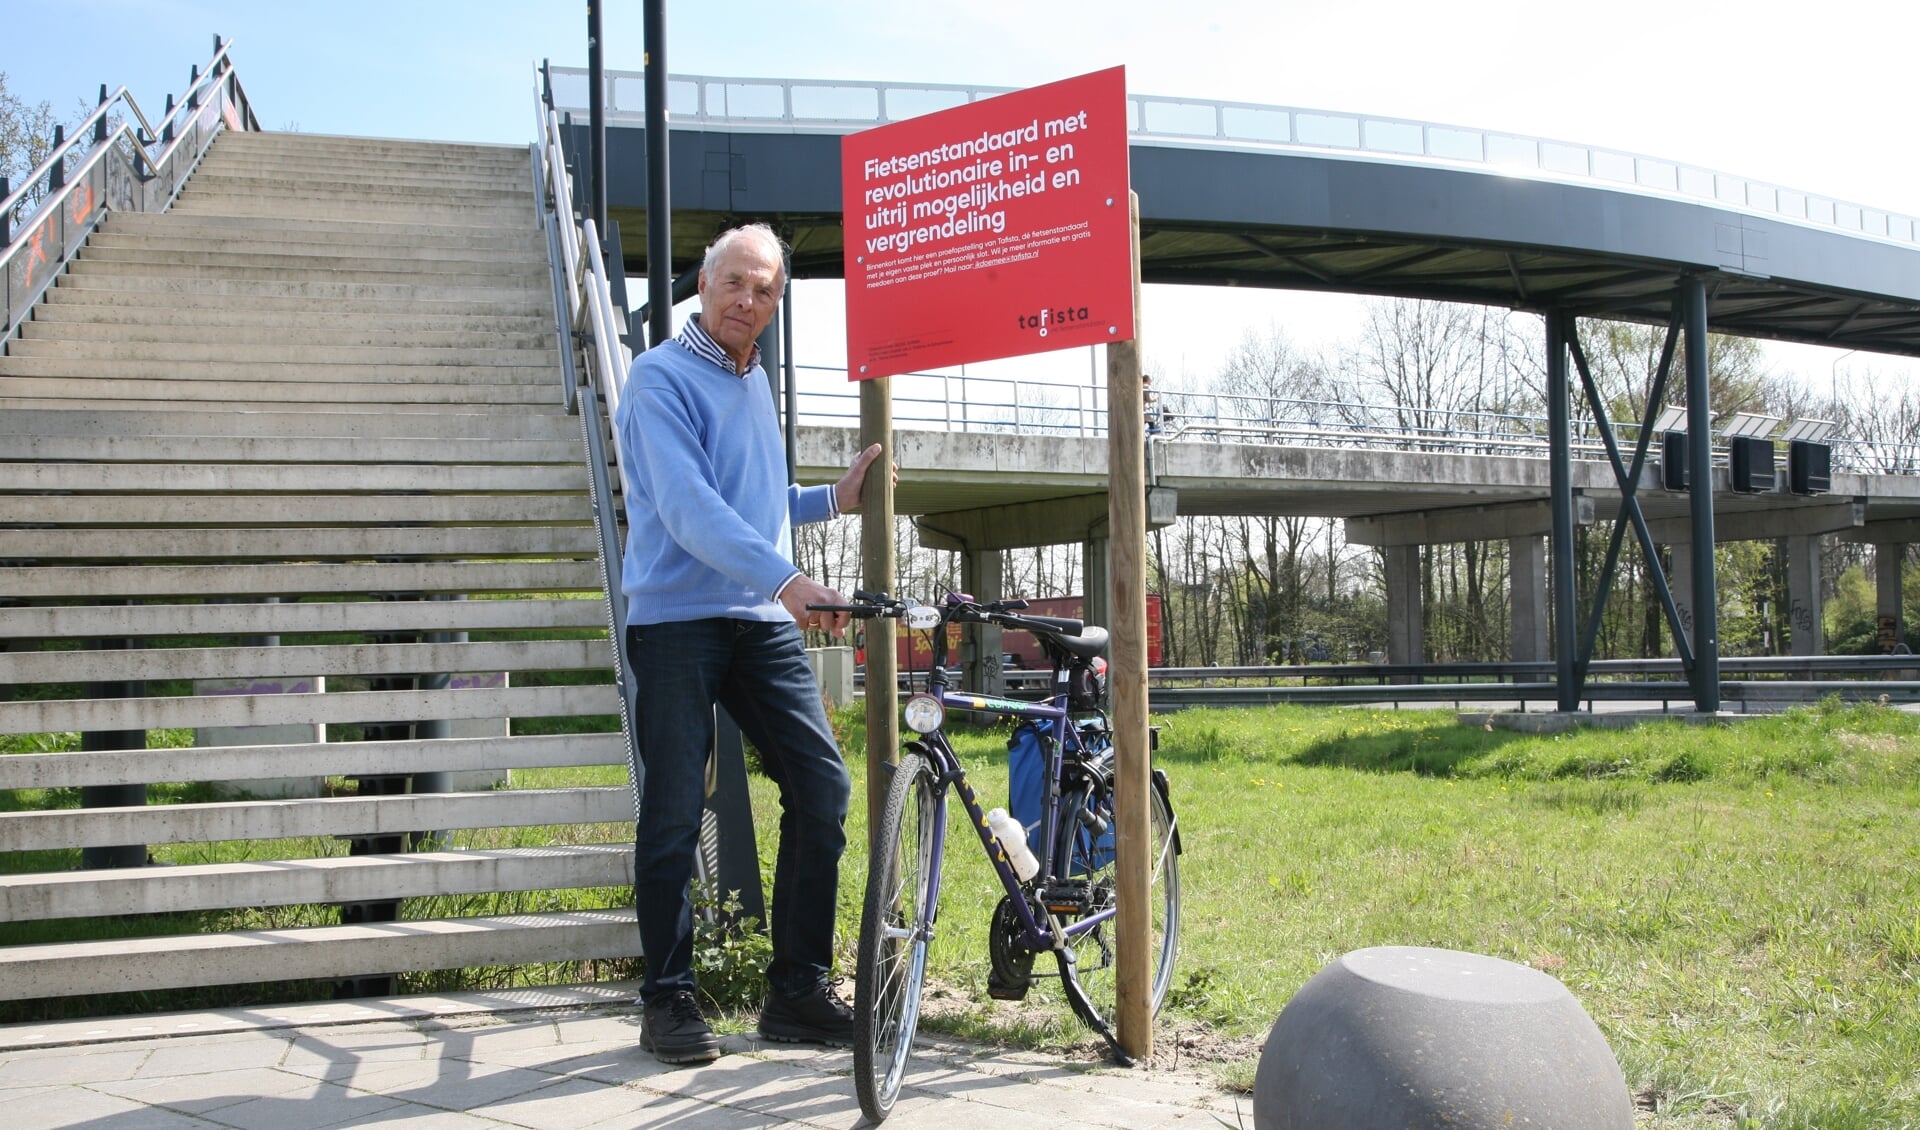 Alternatief voorstel weigeren Acht Testers gezocht voor nieuw fietsenrek station Hoevelaken - StadNijkerk.nl  Nieuws uit de regio Nijkerk